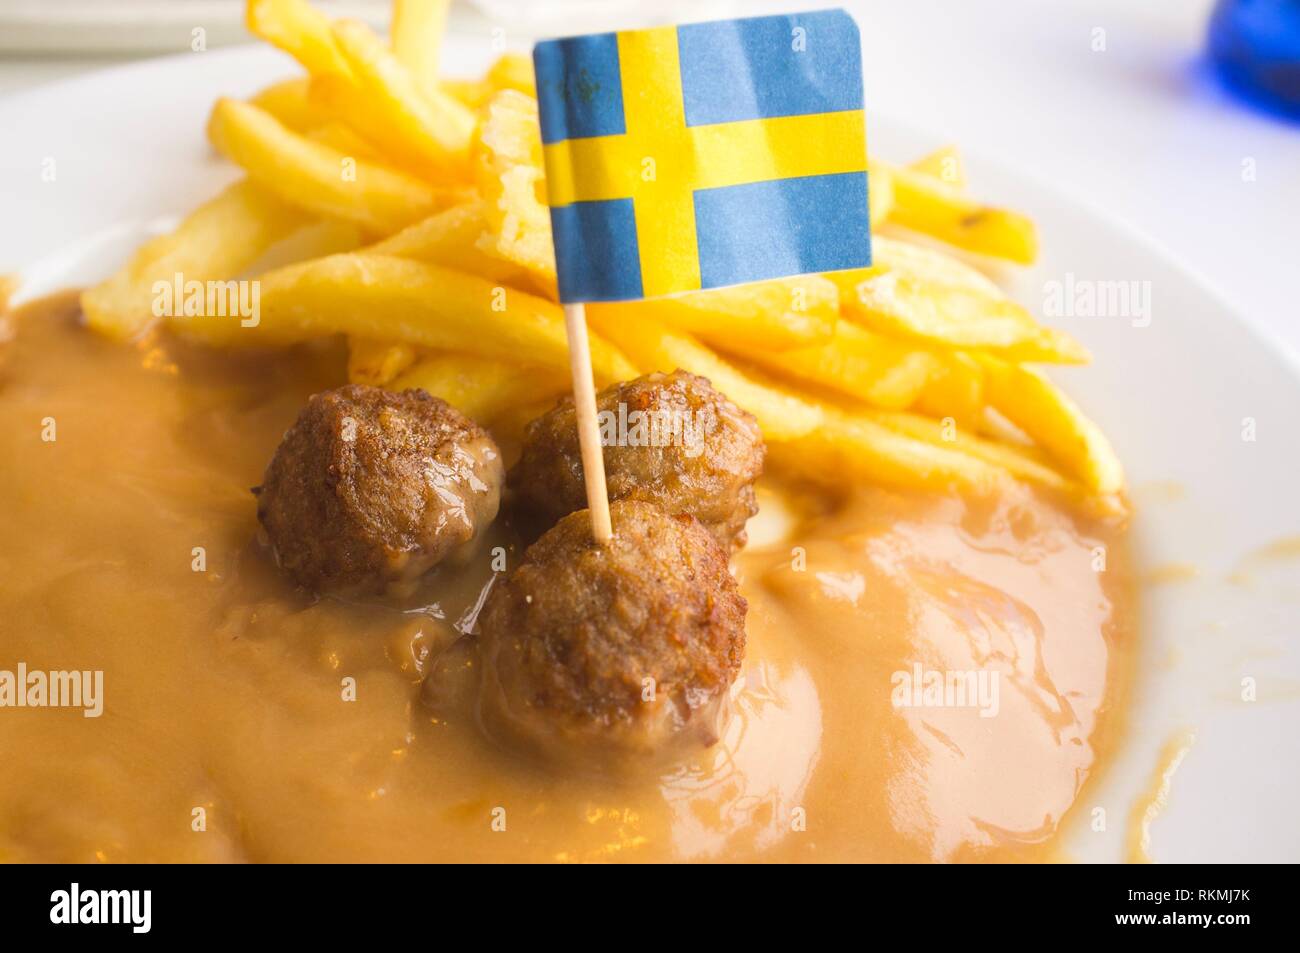 Famosas albóndigas suecas placa en salsa con patatas fritas. La bandera de Suecia. Foto de stock